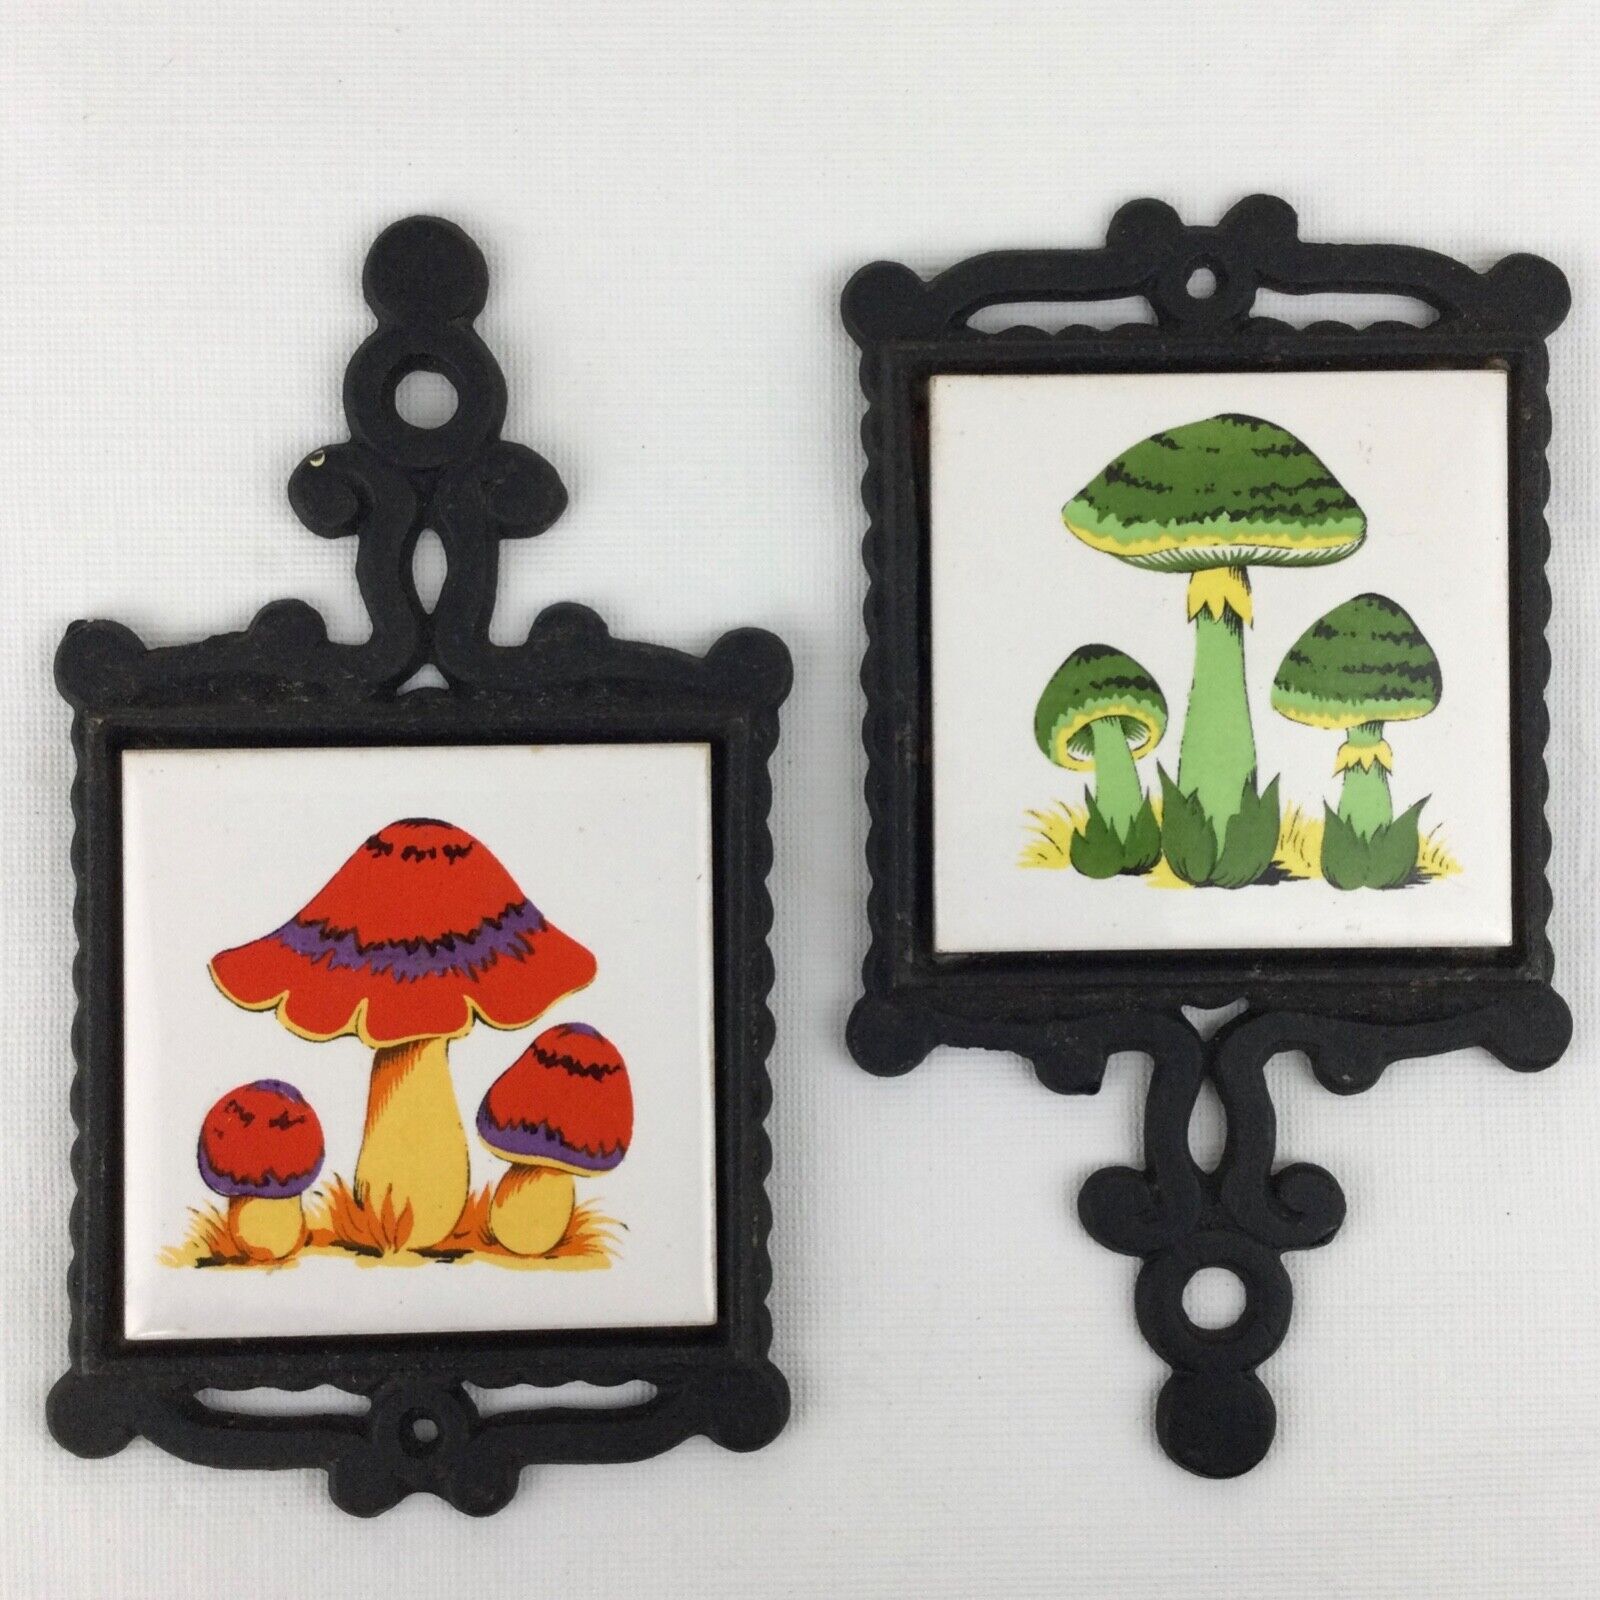 2 Vintage 1970s Mini Mushroom Trivet Set Tiles Retro Mid Century Small Merry